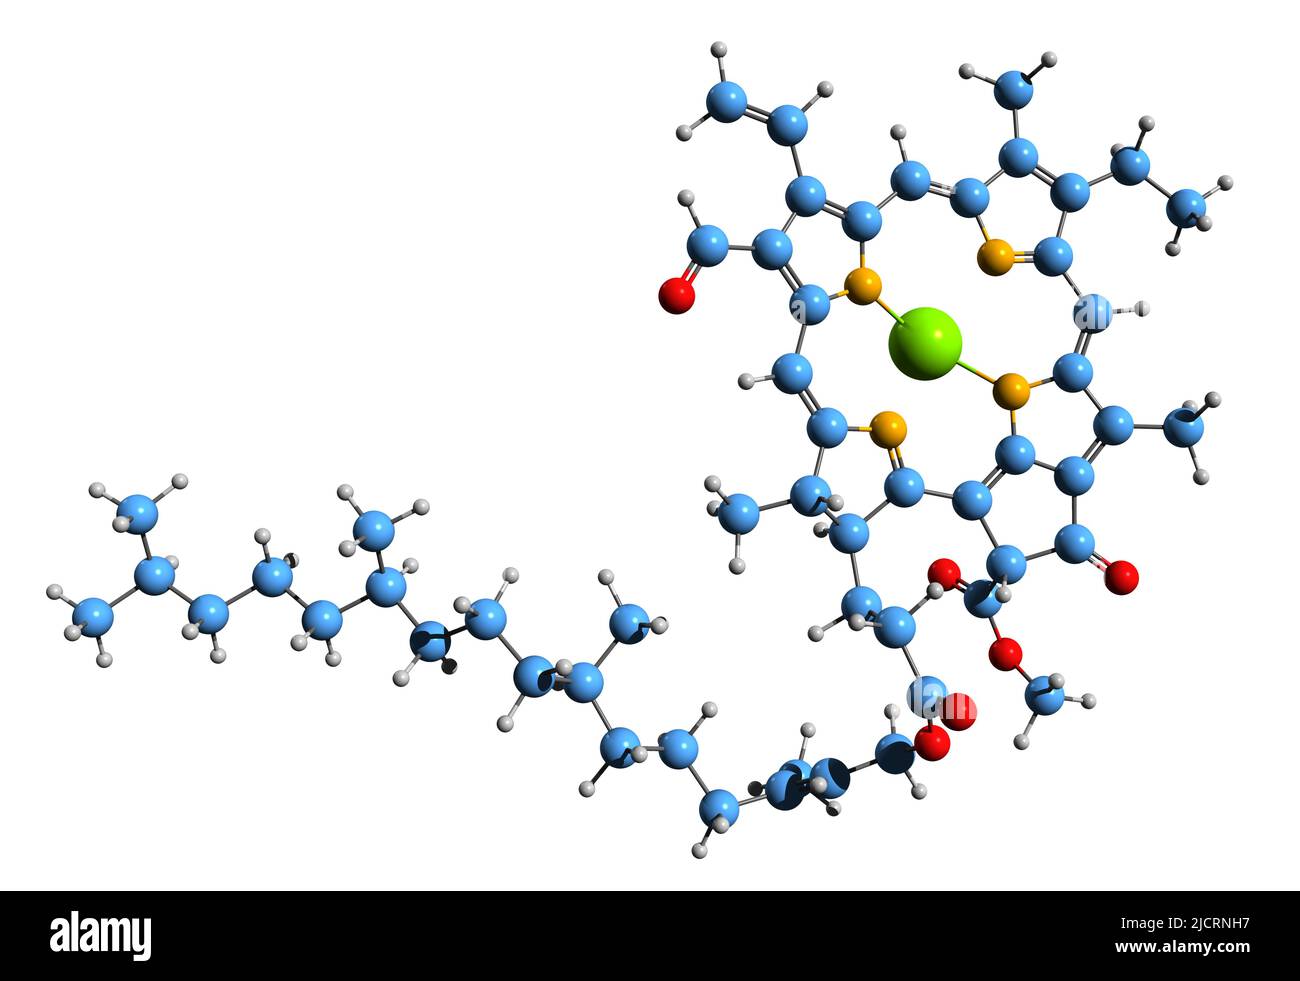 3D Bild von Chlorophyll f der Skelettformel - molekulare chemische Struktur von Chlorophyll isoliert auf weißem Hintergrund Stockfoto